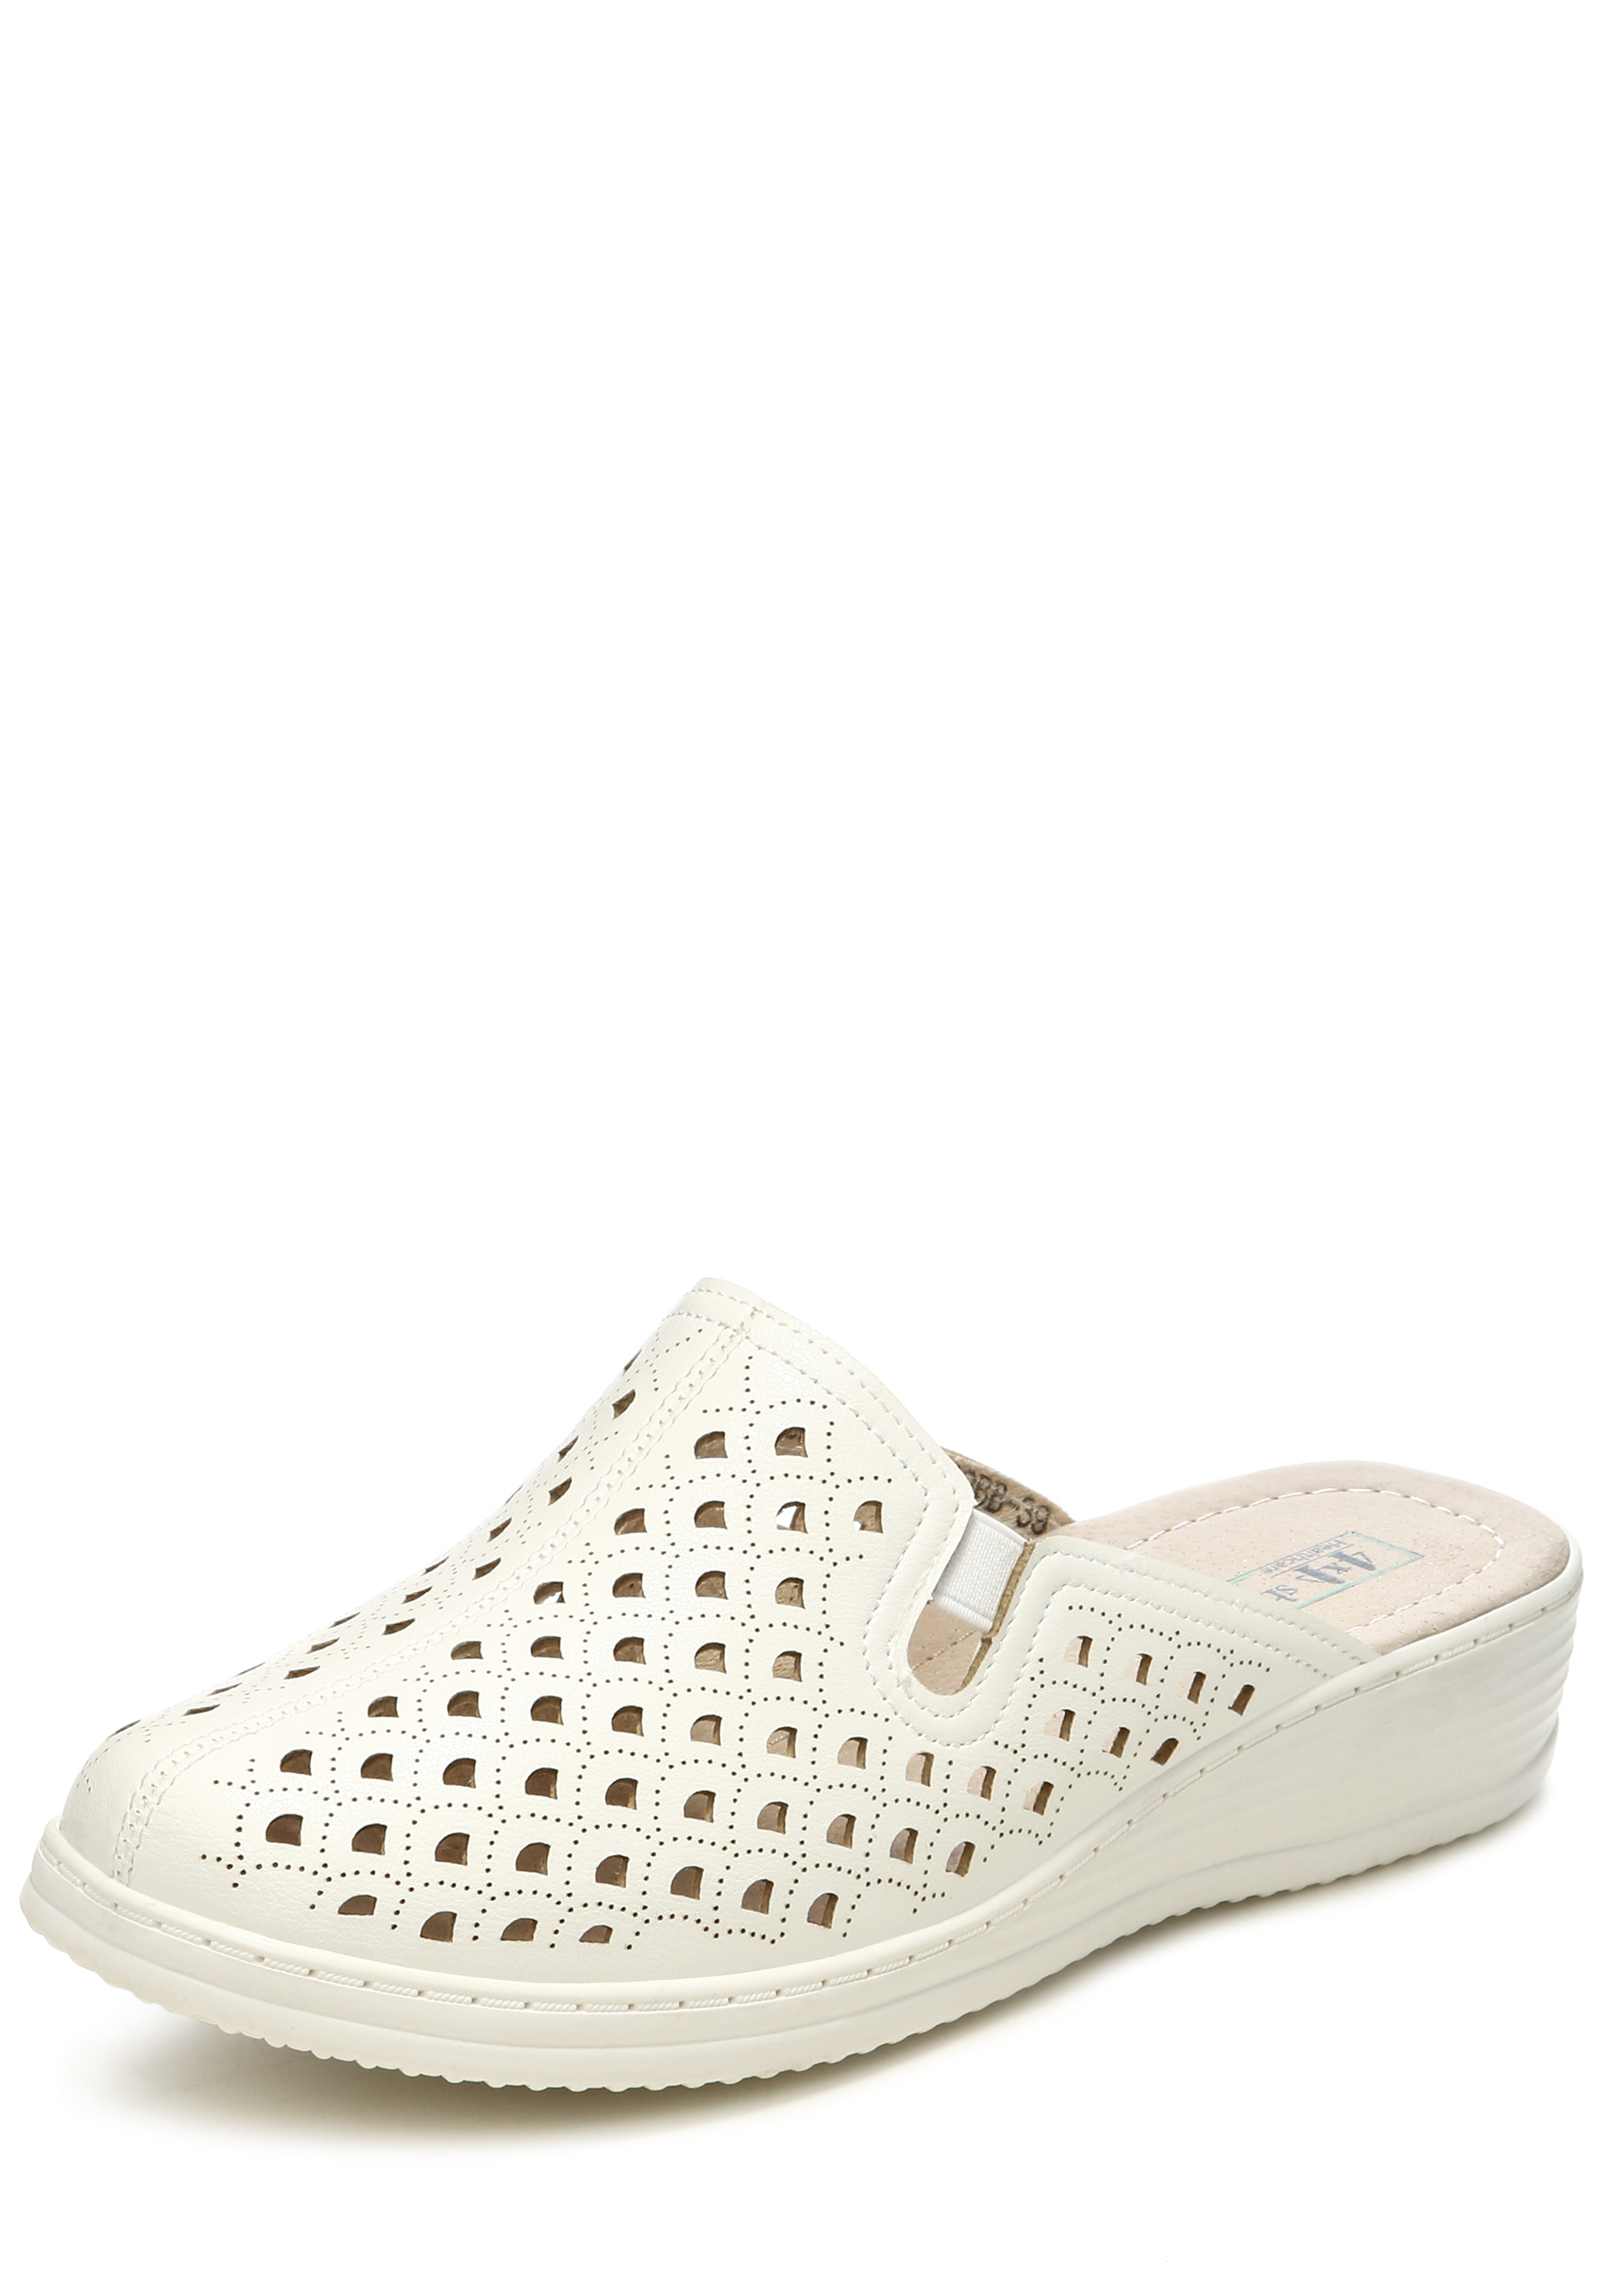 Сабо женские "Ника" 4x4 shoes, цвет белый, размер 36